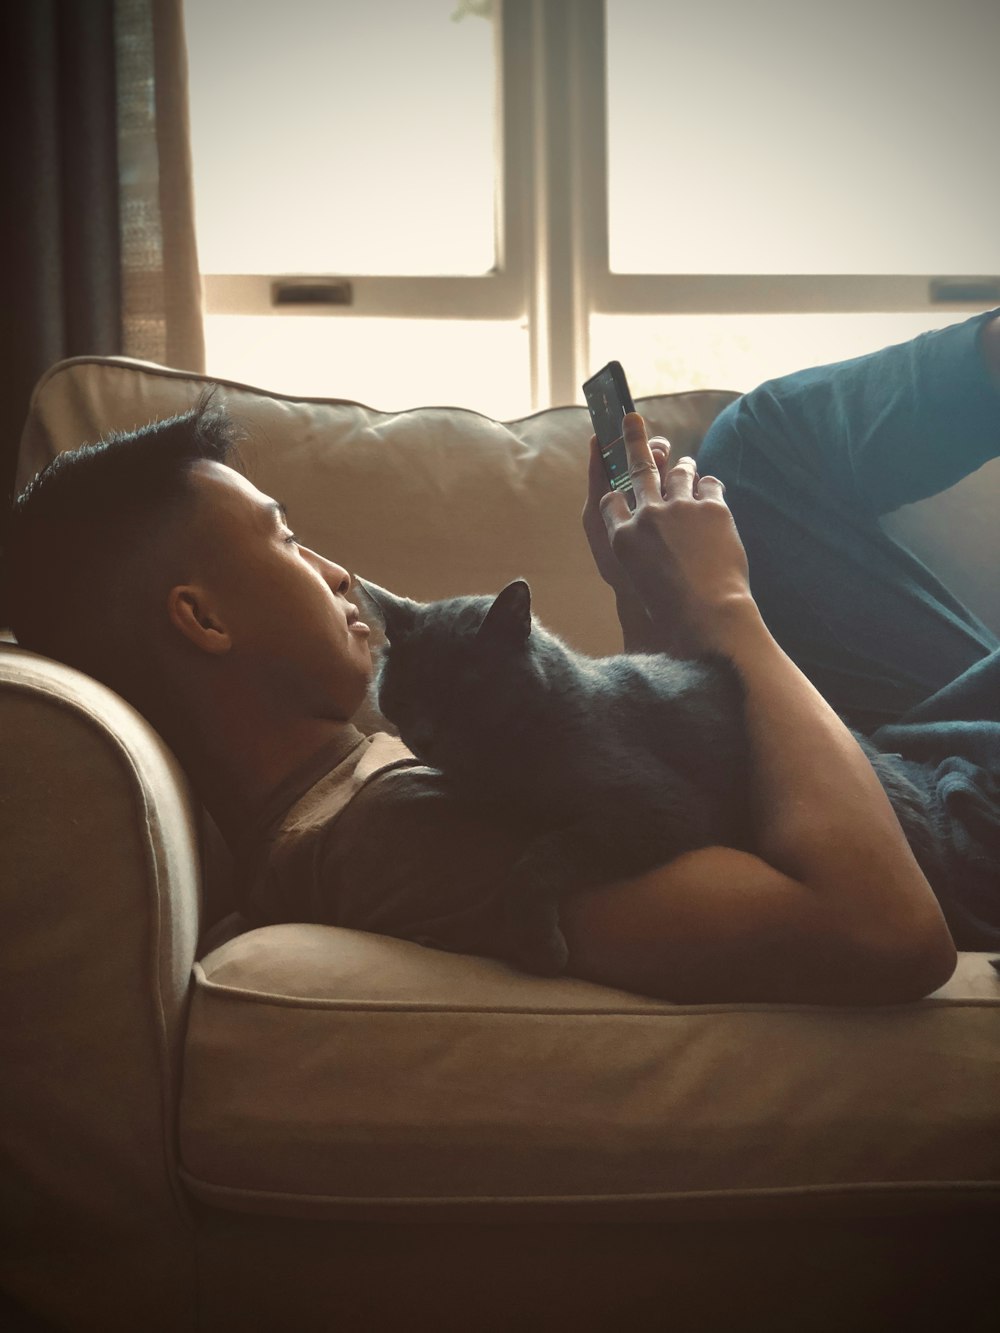 Femme en débardeur bleu allongée sur le canapé avec un chat noir